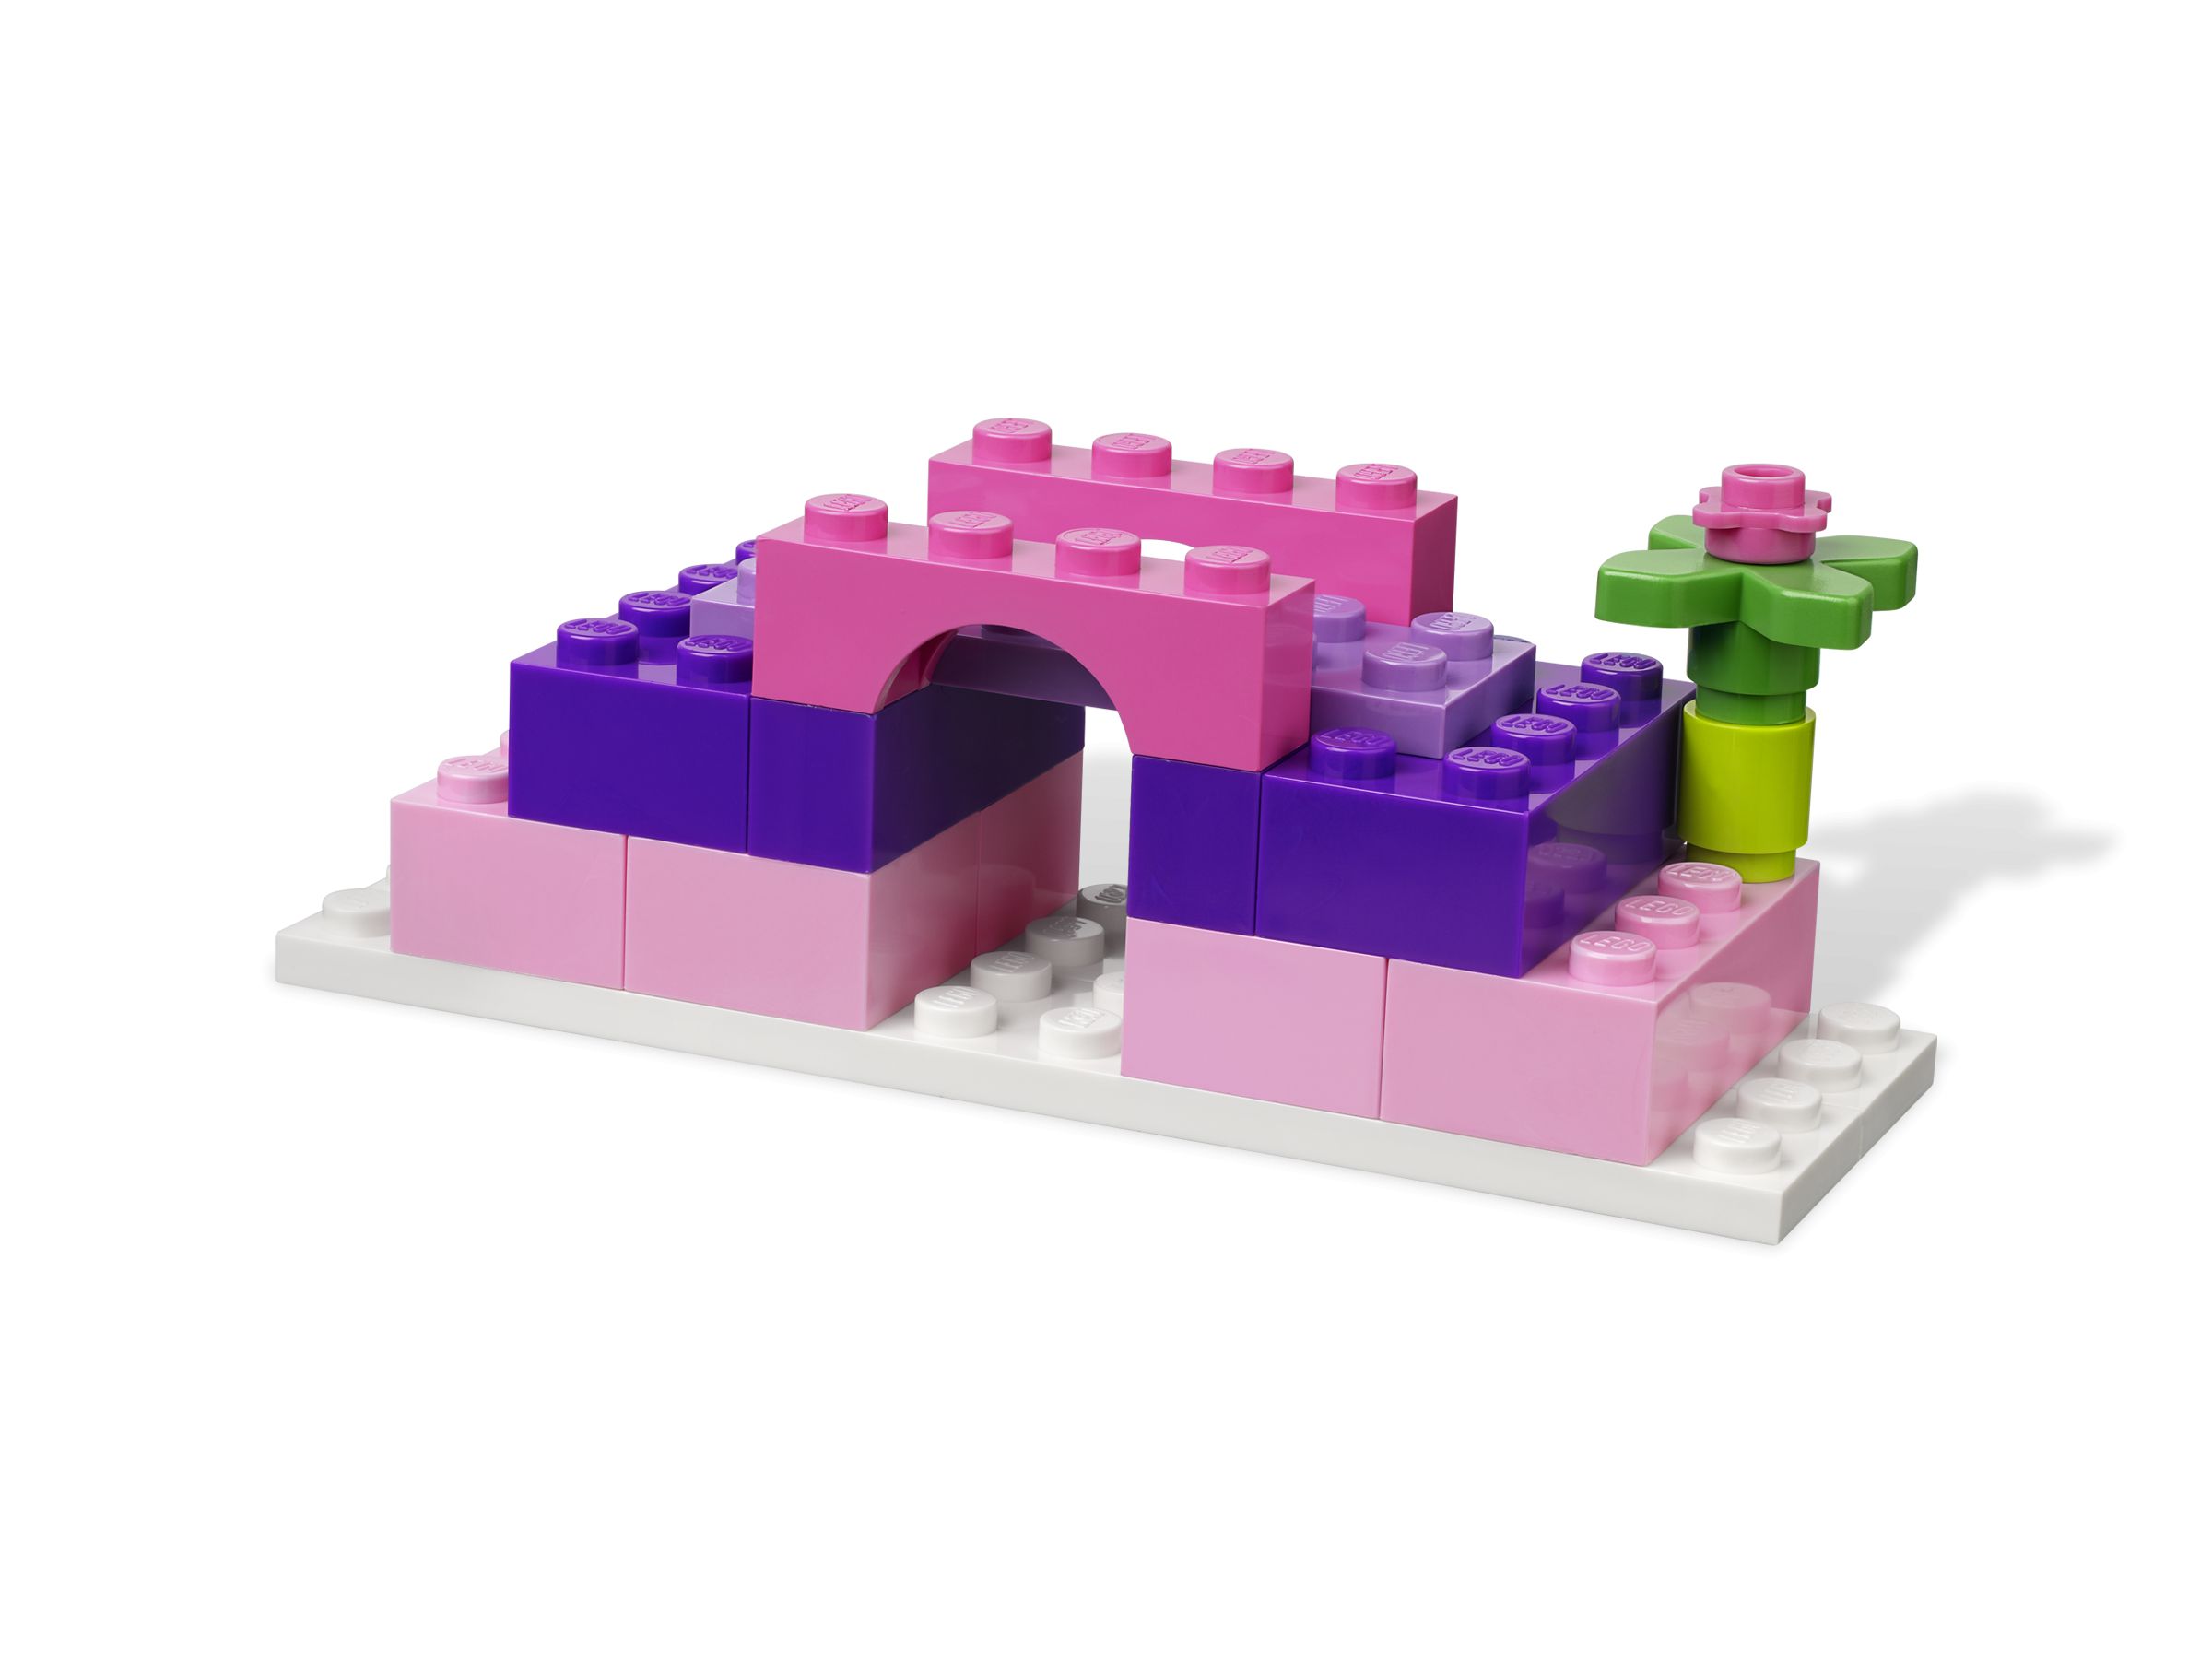 LEGO Bricks and More 4625 Mädchen-Steinebox LEGO_4625_alt3.jpg